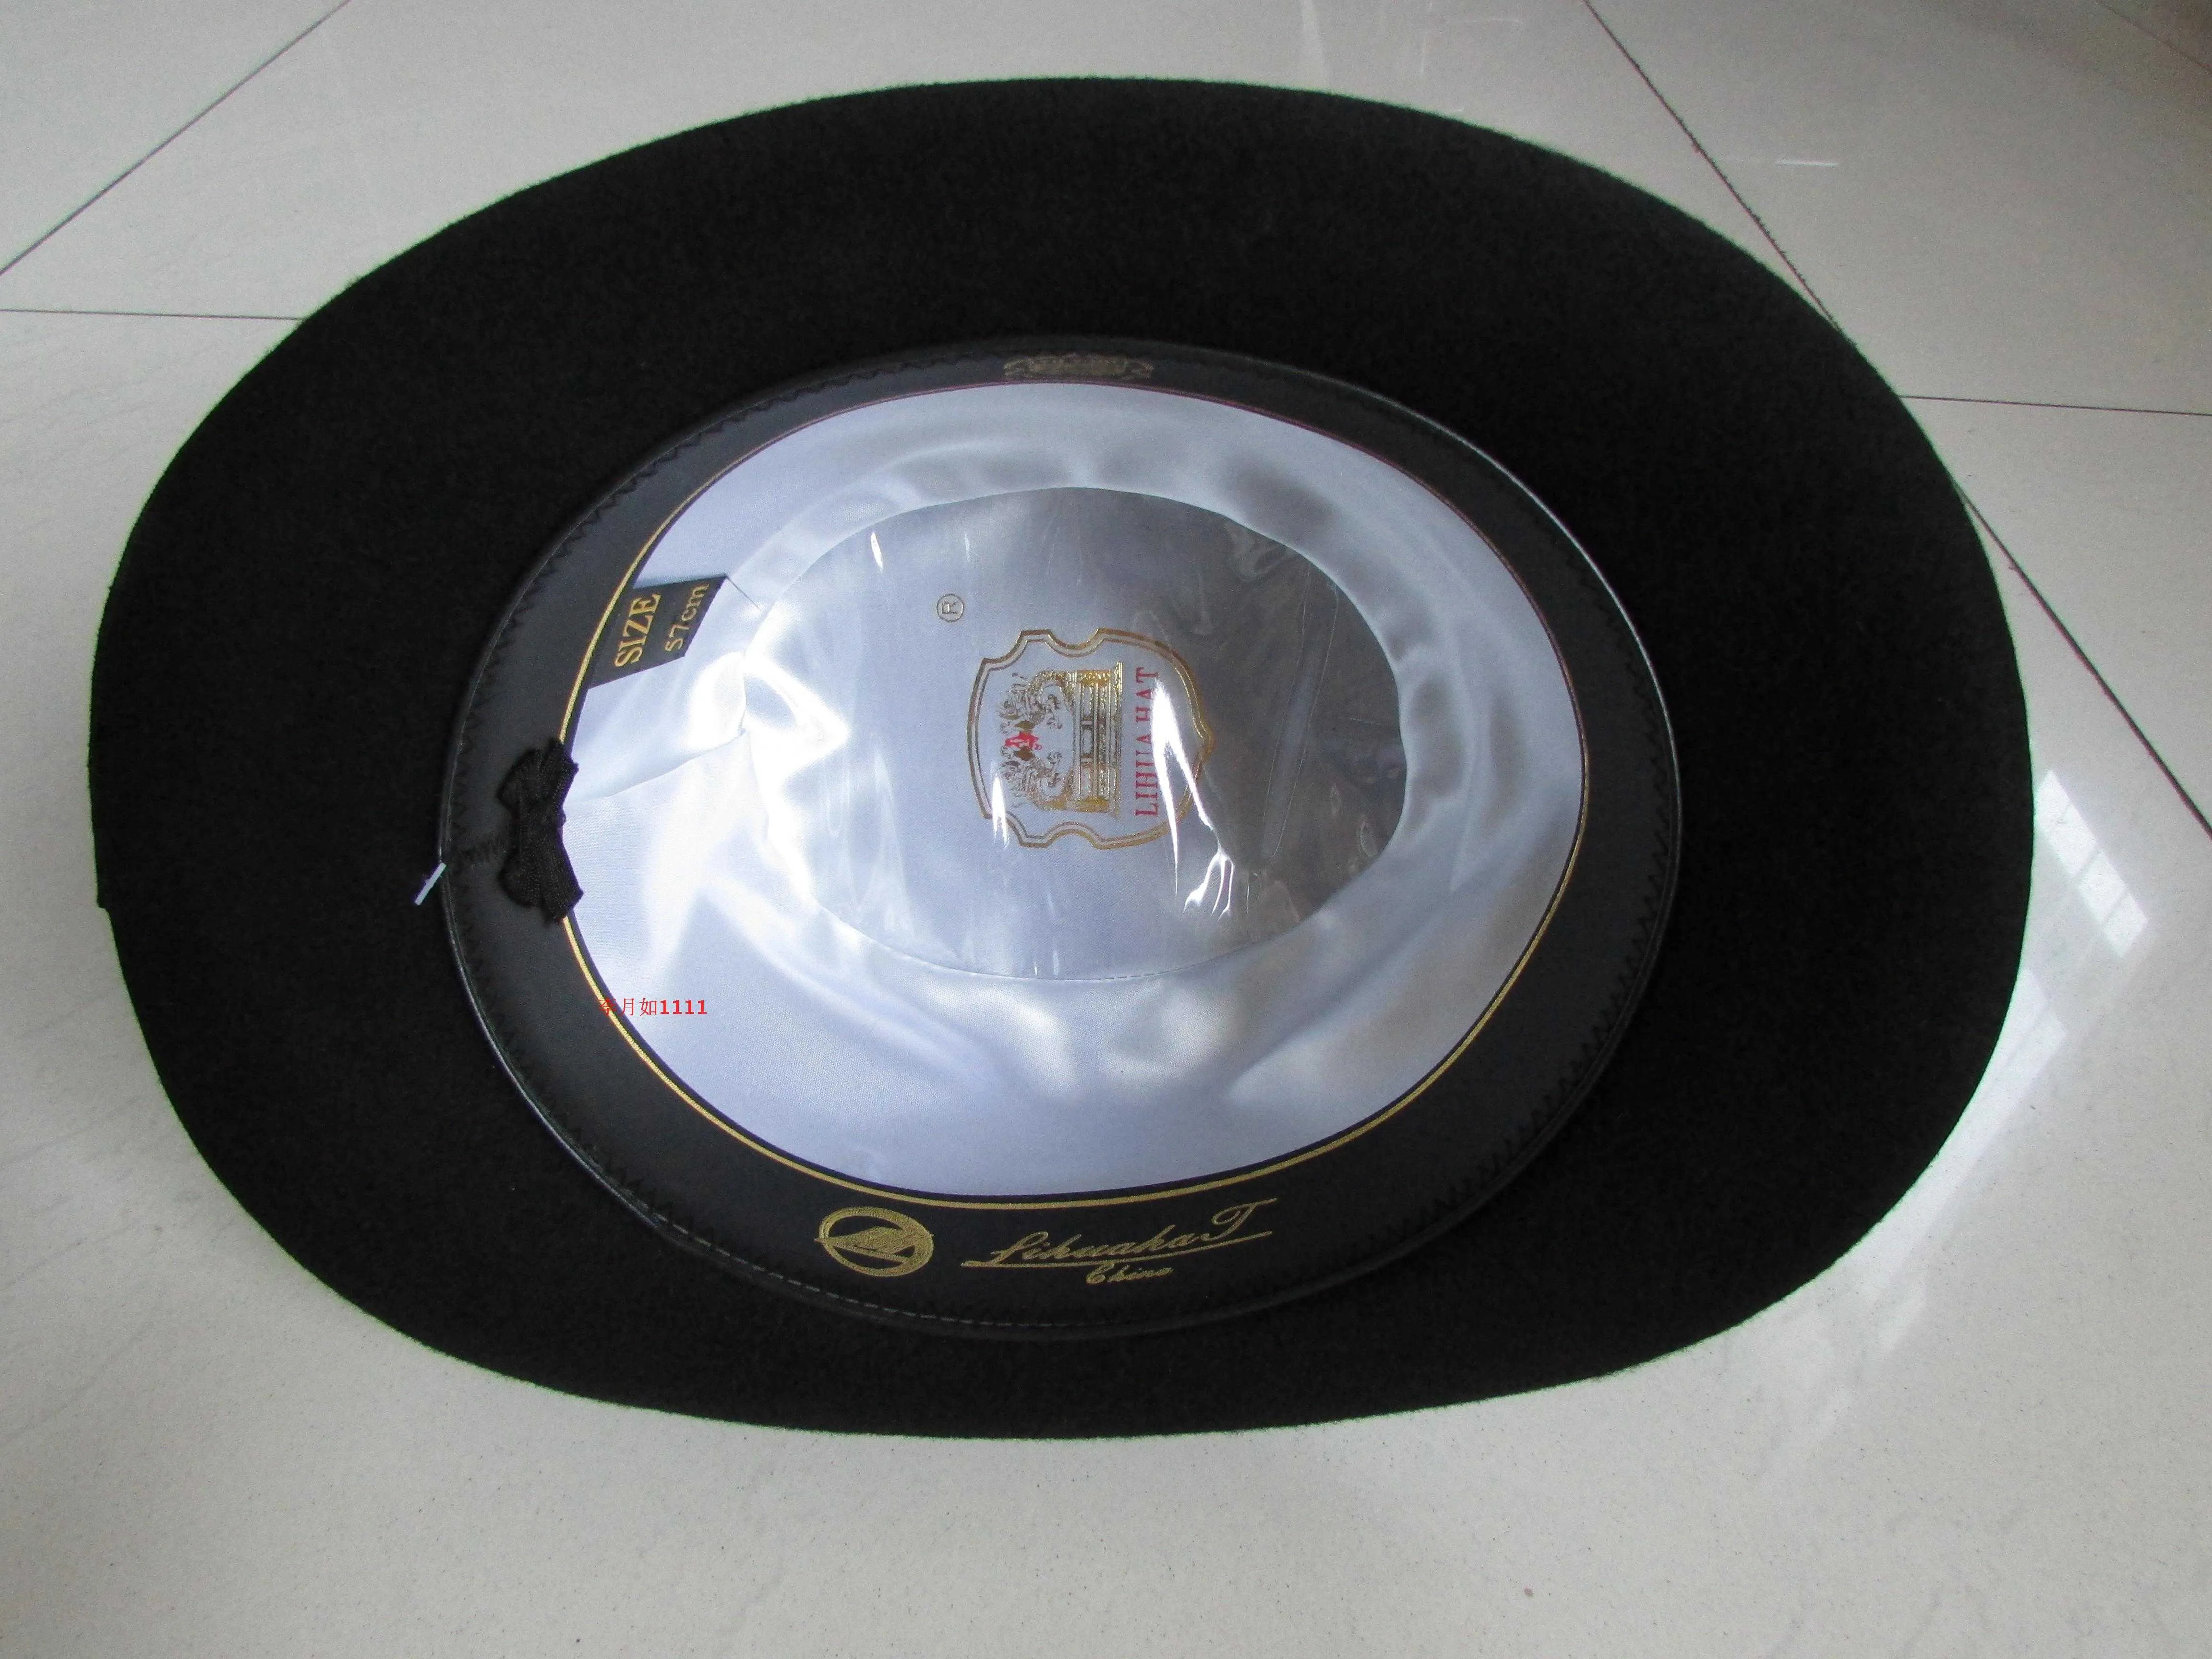 Nuovi cappelli da 100 lana di alta qualità Men039s and Women039s Cappelli bombetta nera Cappelli di lana nera Derby Bowler Cappelli bocchi B8134 5158748